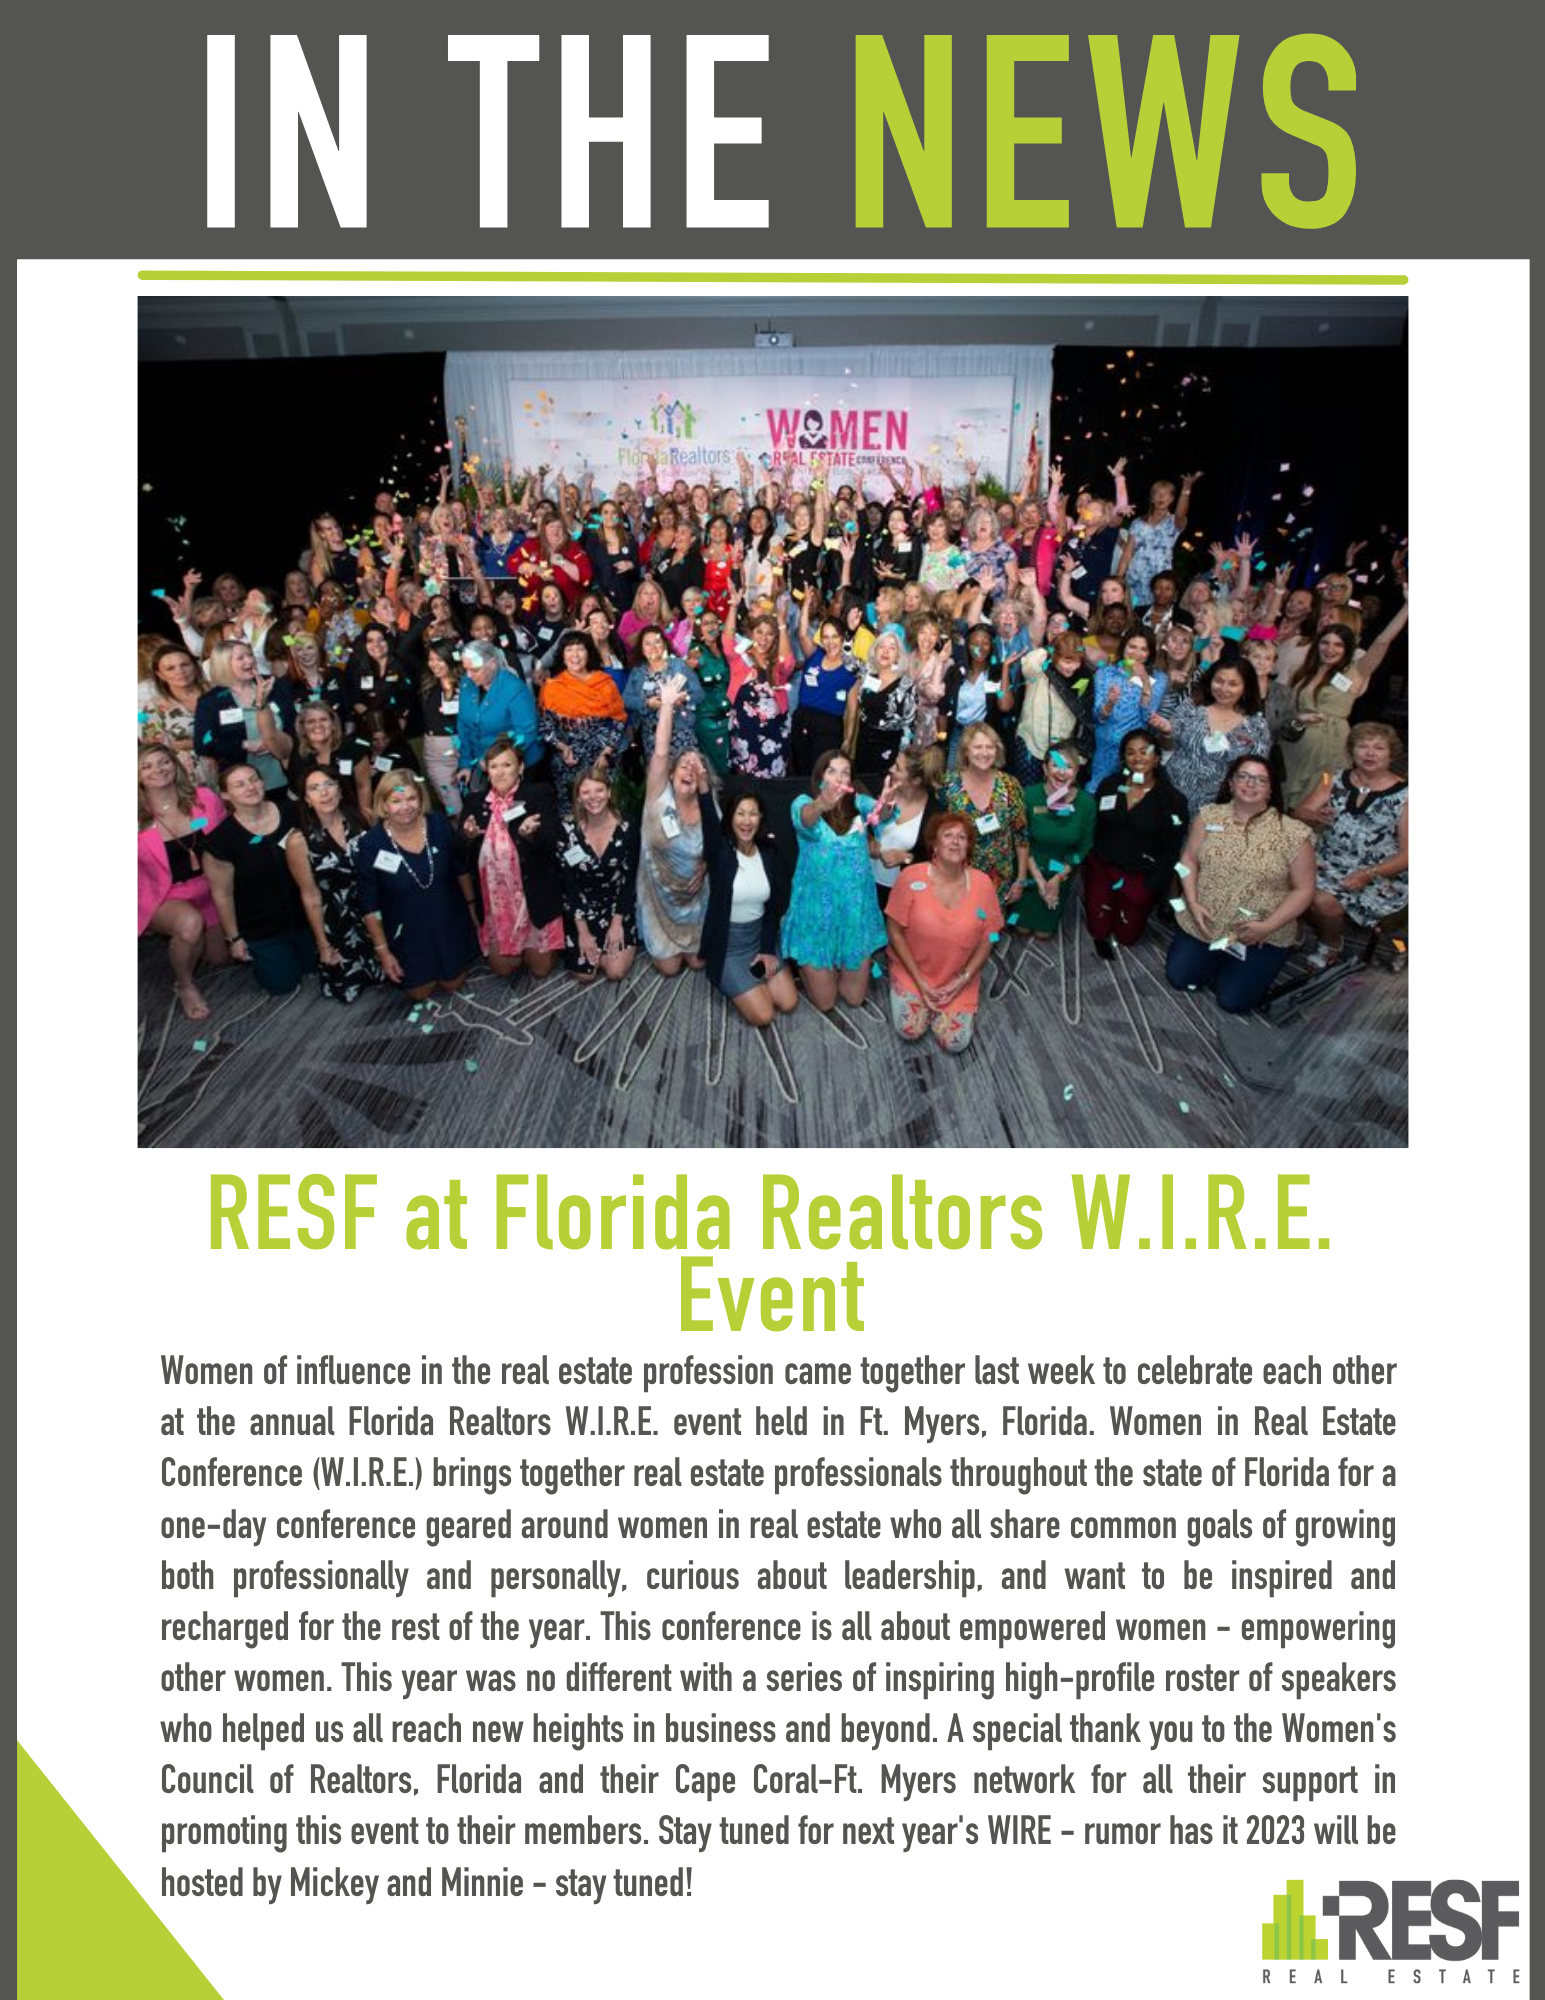 RESF at Florida Realtors W.I.R.E. Event